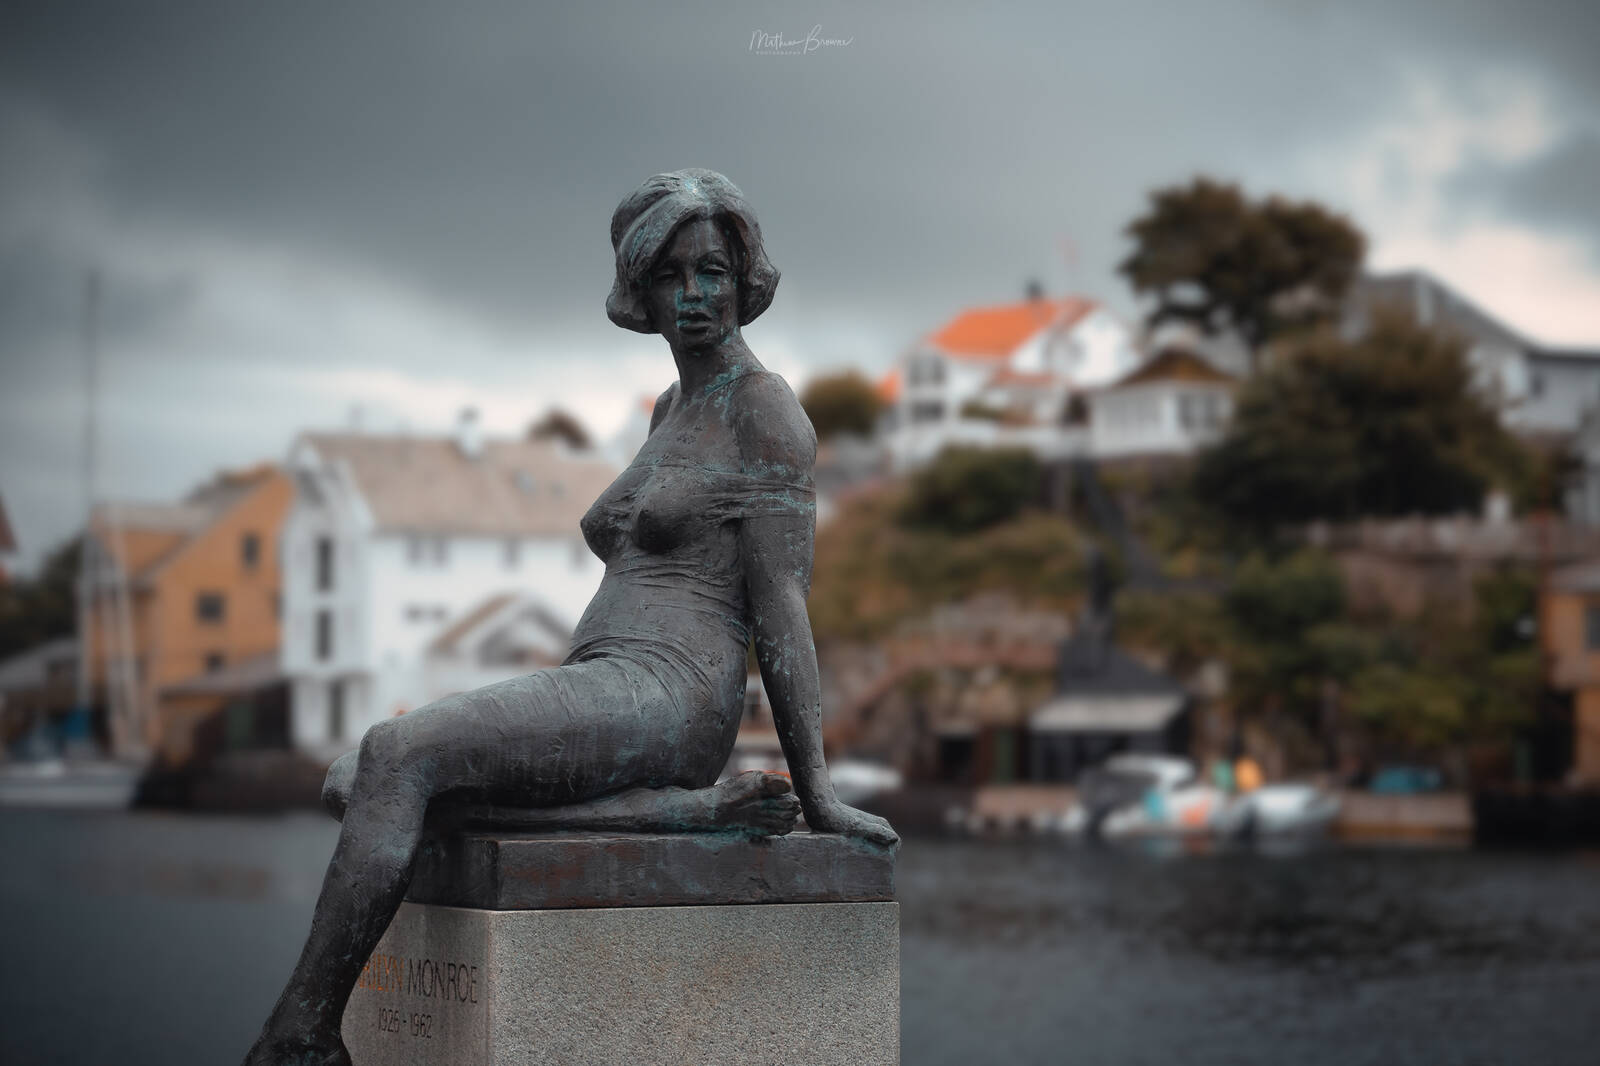 Image of Marilyn Monroe Statue of Haugesund by Mathew Browne